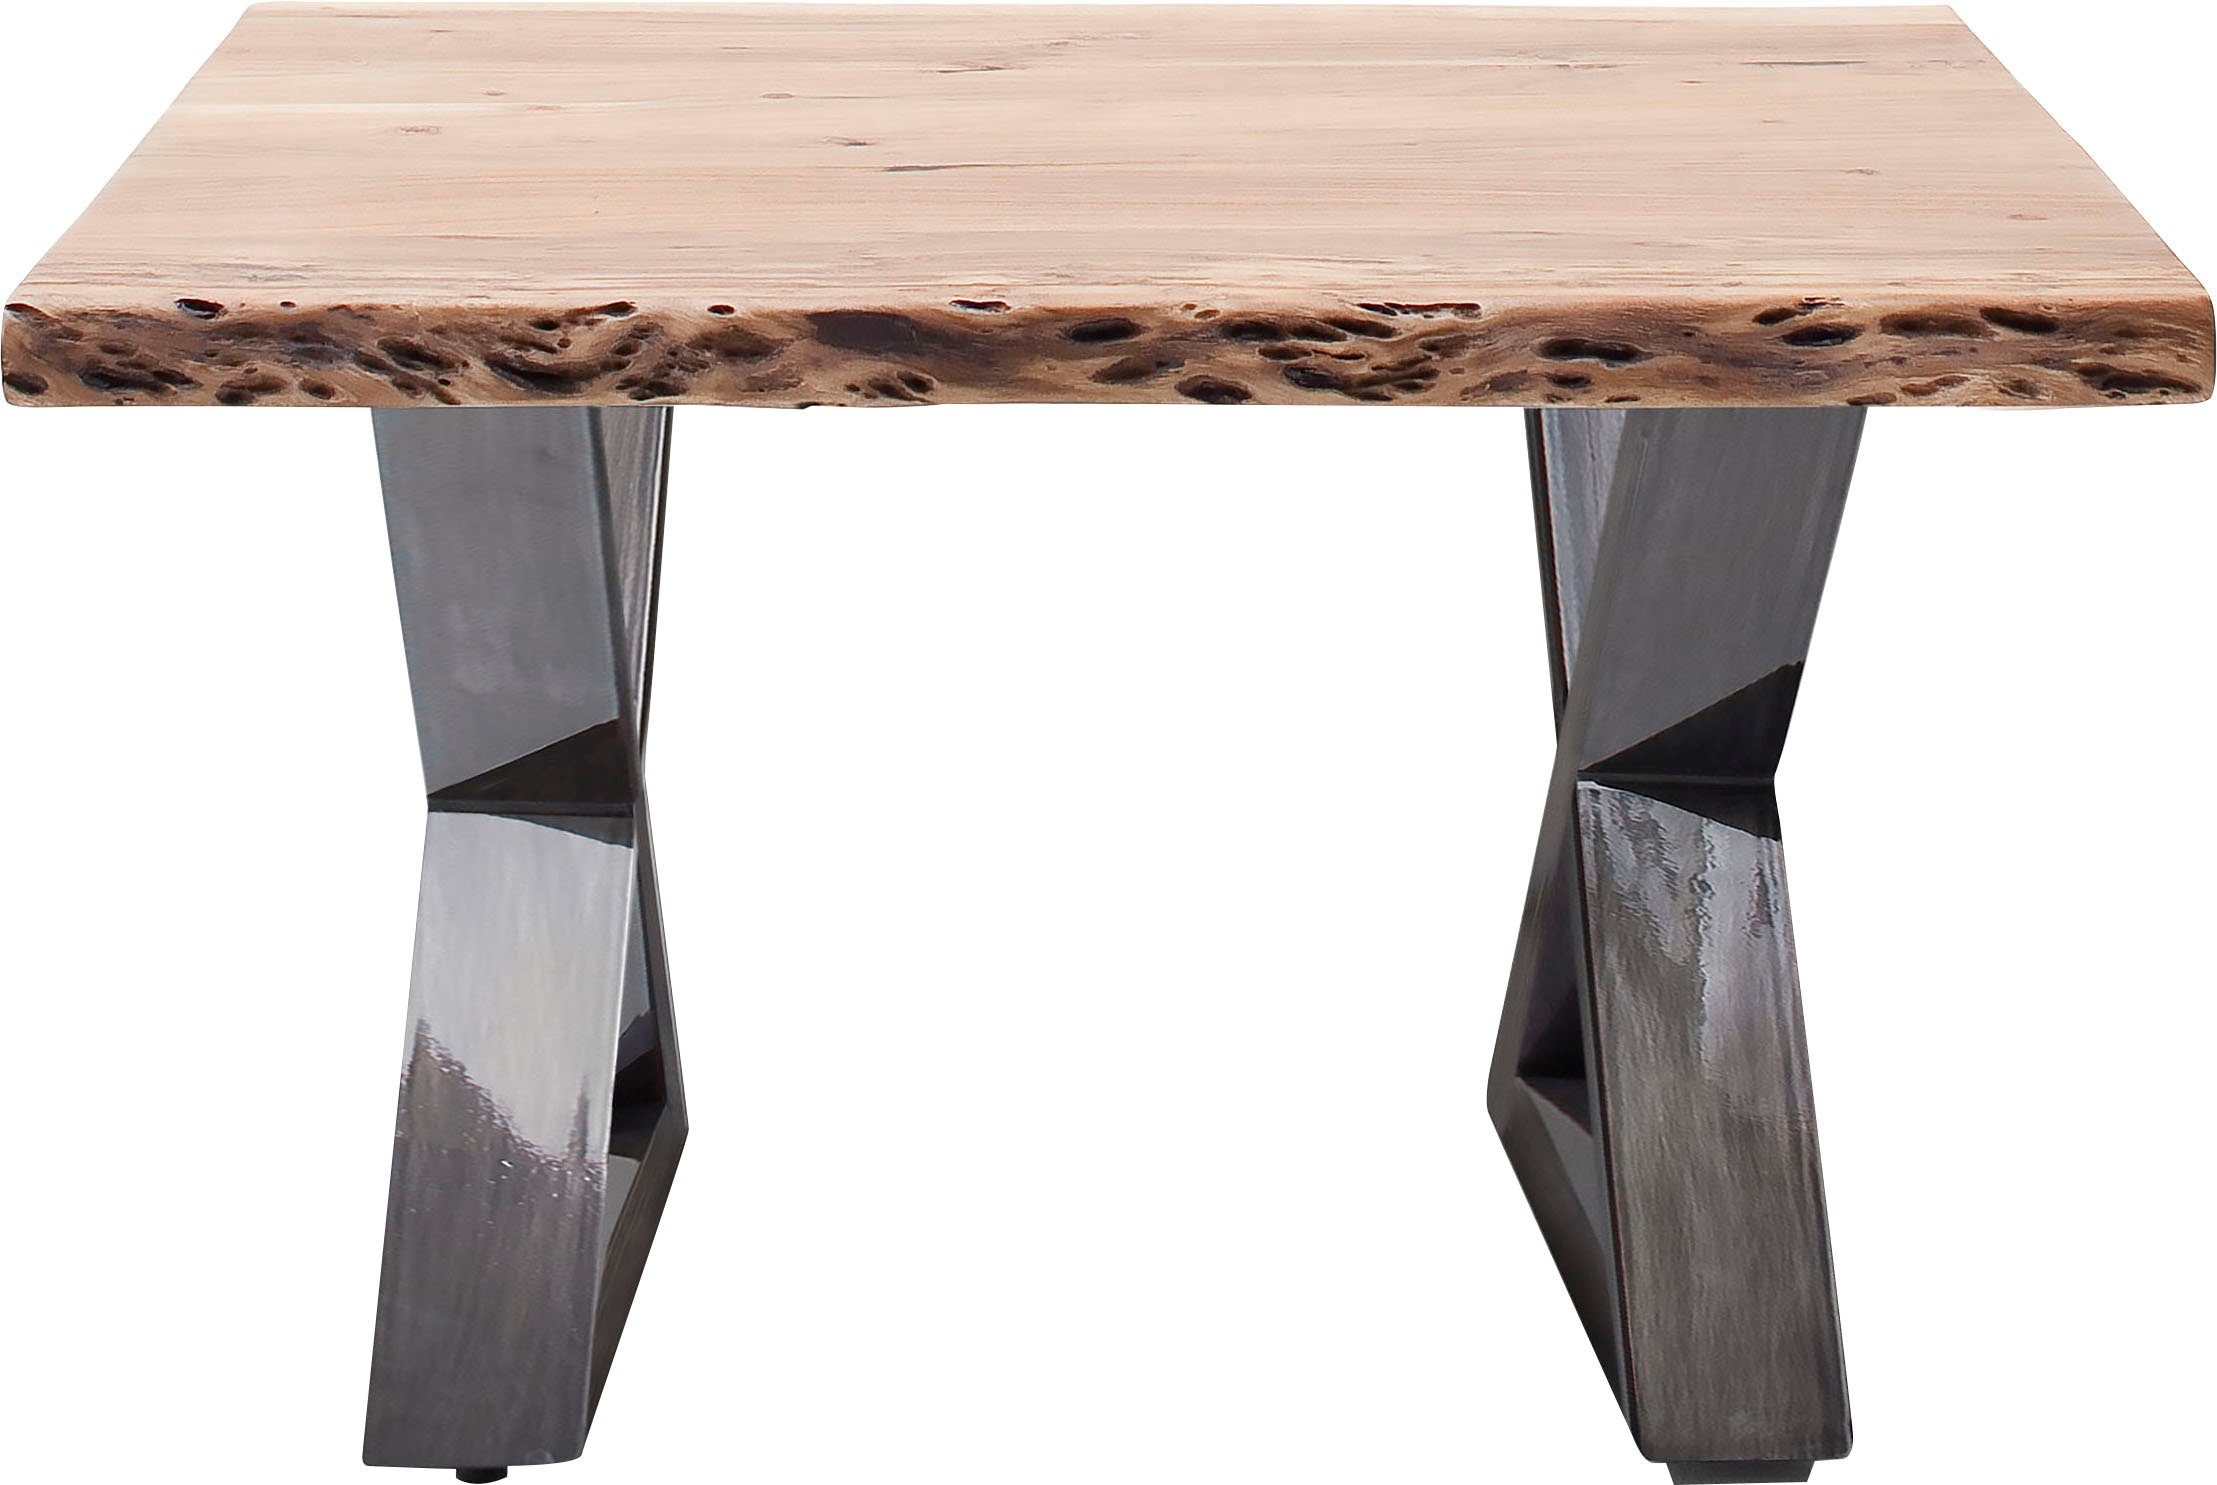 mca furniture salontafel cartagena salontafel massief hout met boomstamrand en natuurlijke kieren en gaatjes beige